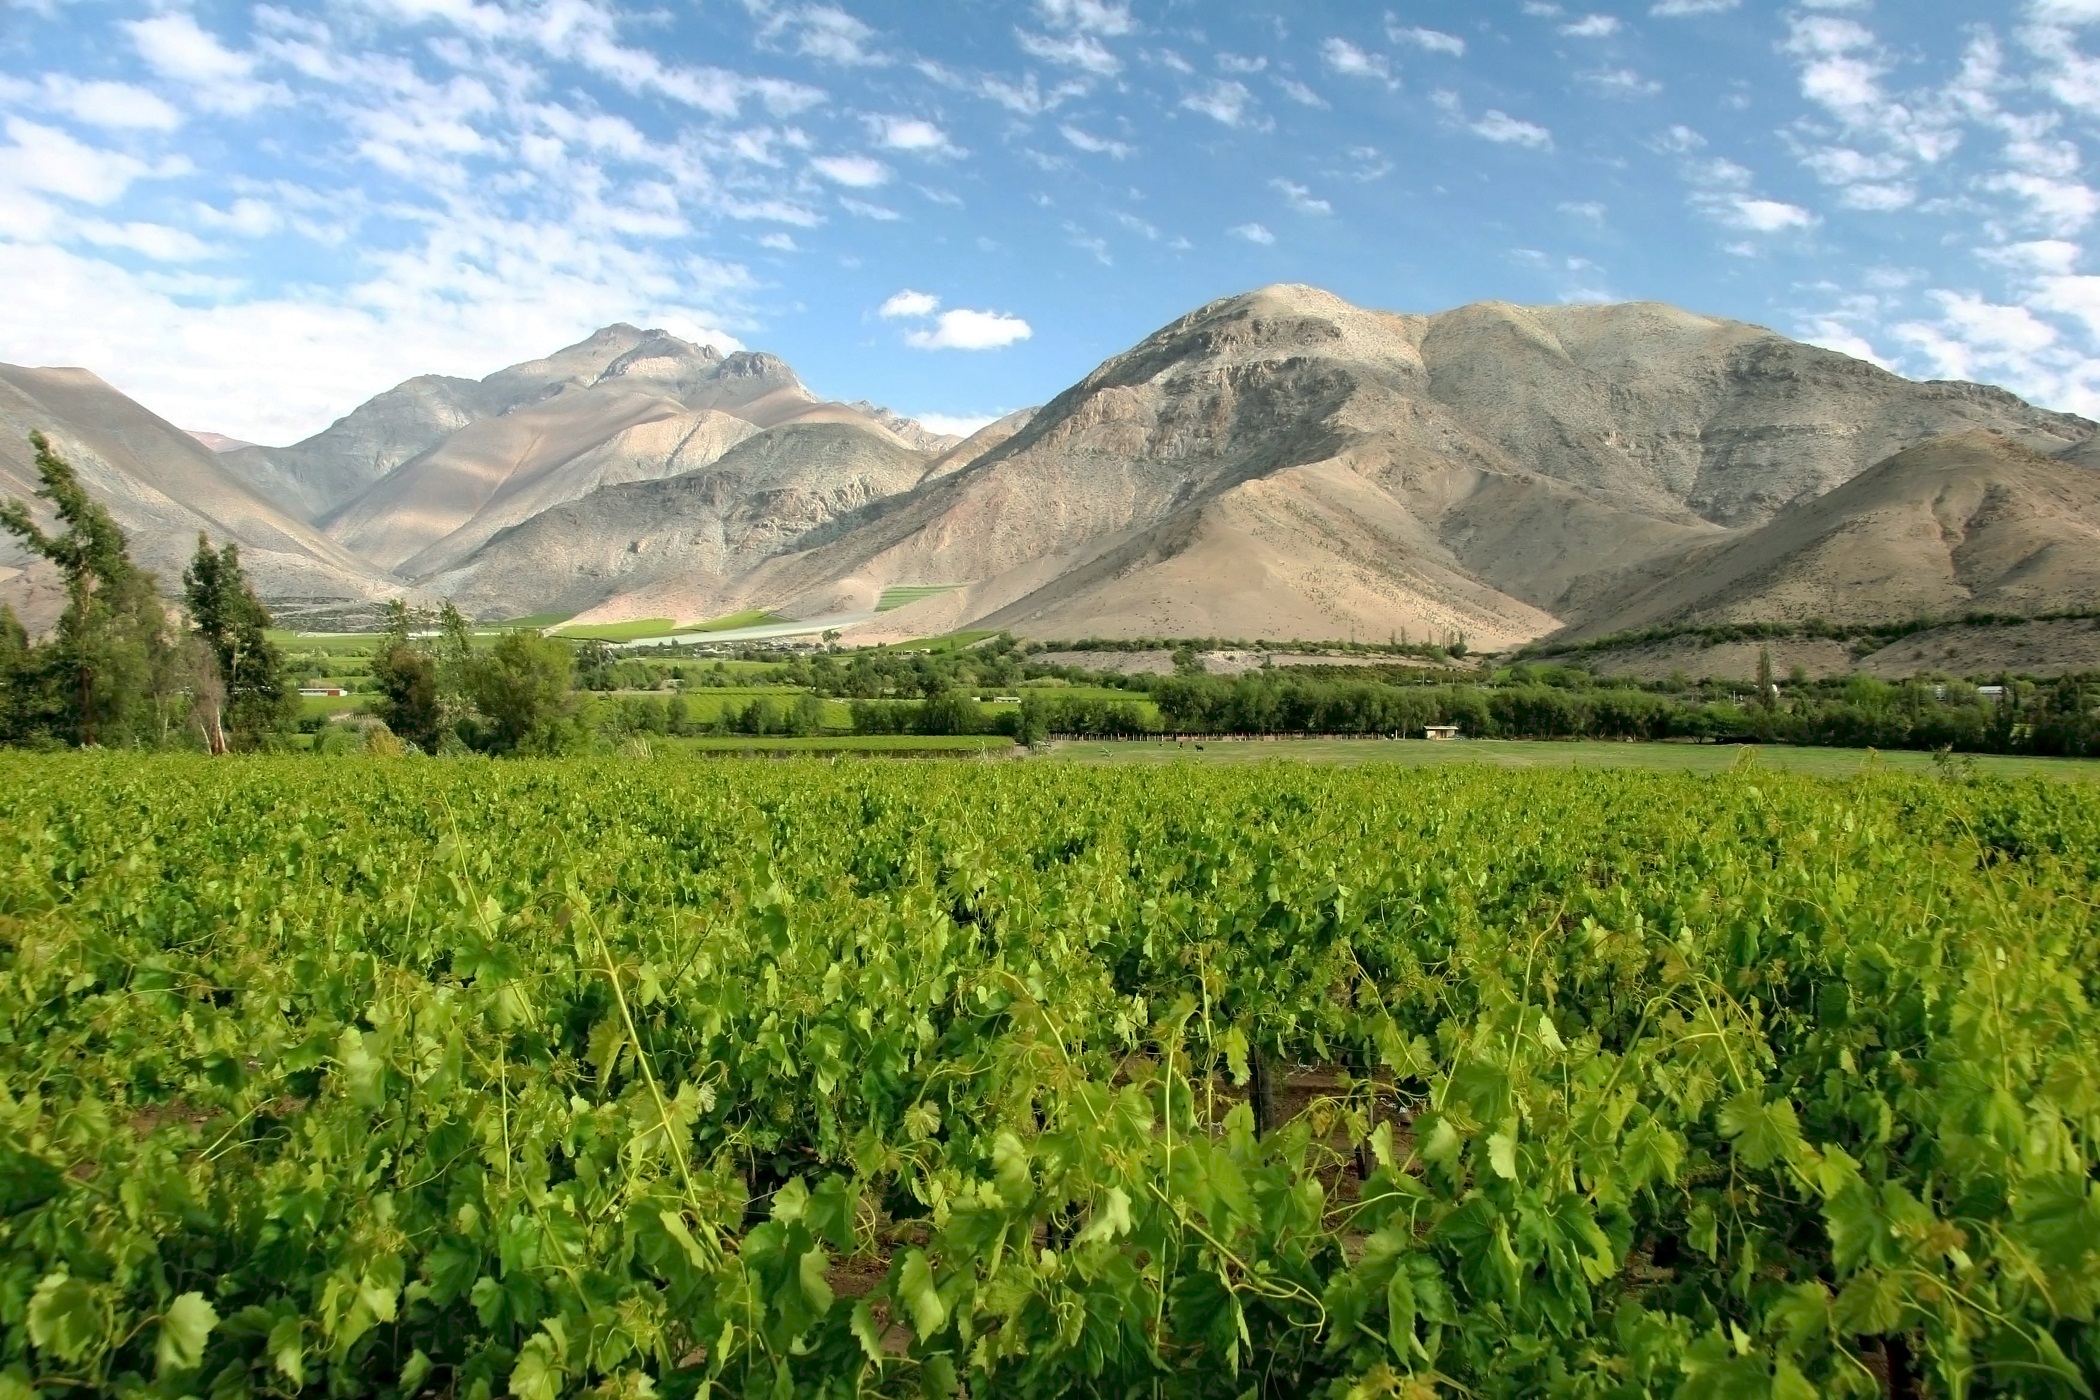 Chile's wine region